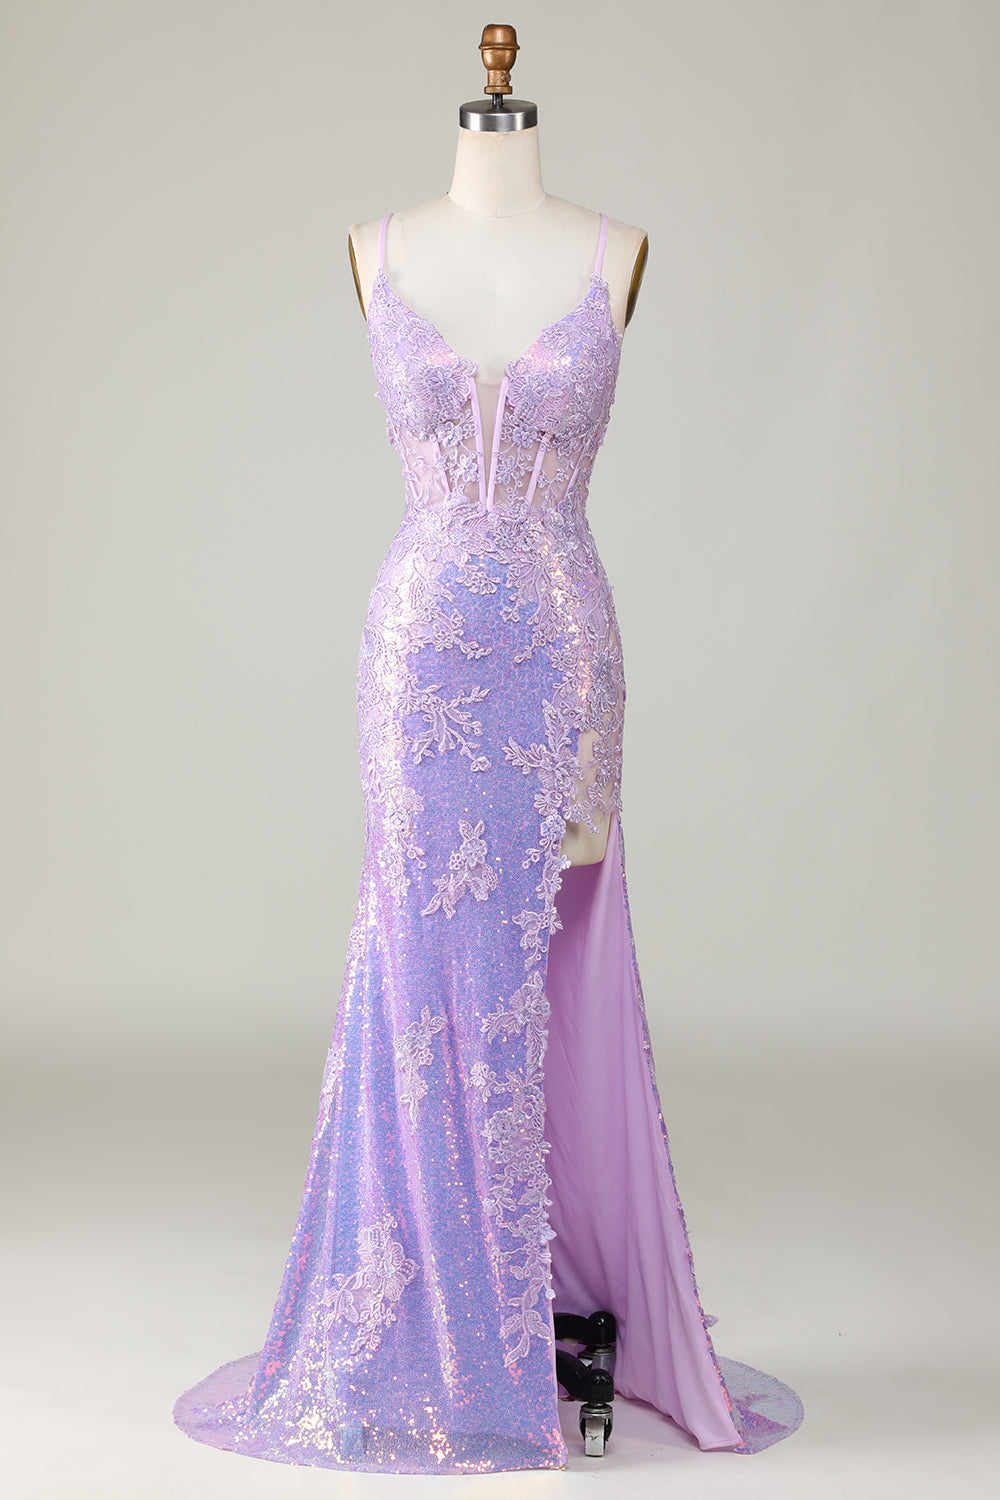 Zapakasa Women Corset Prom Dress with Slit Purple Spaghetti Straps ...